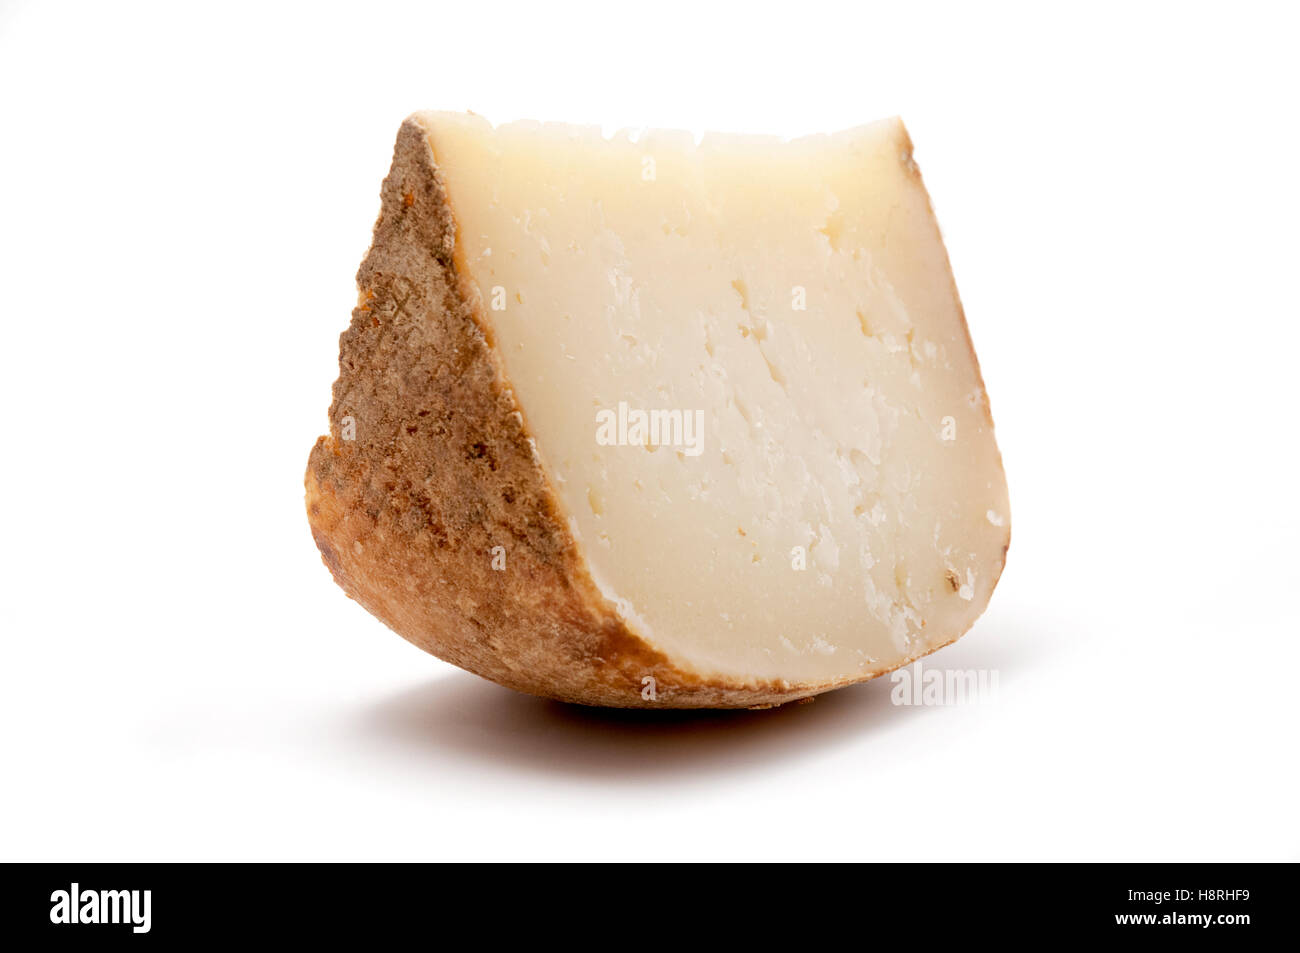 Marzolino (tuscan pecorino) cheese on a white background Stock Photo